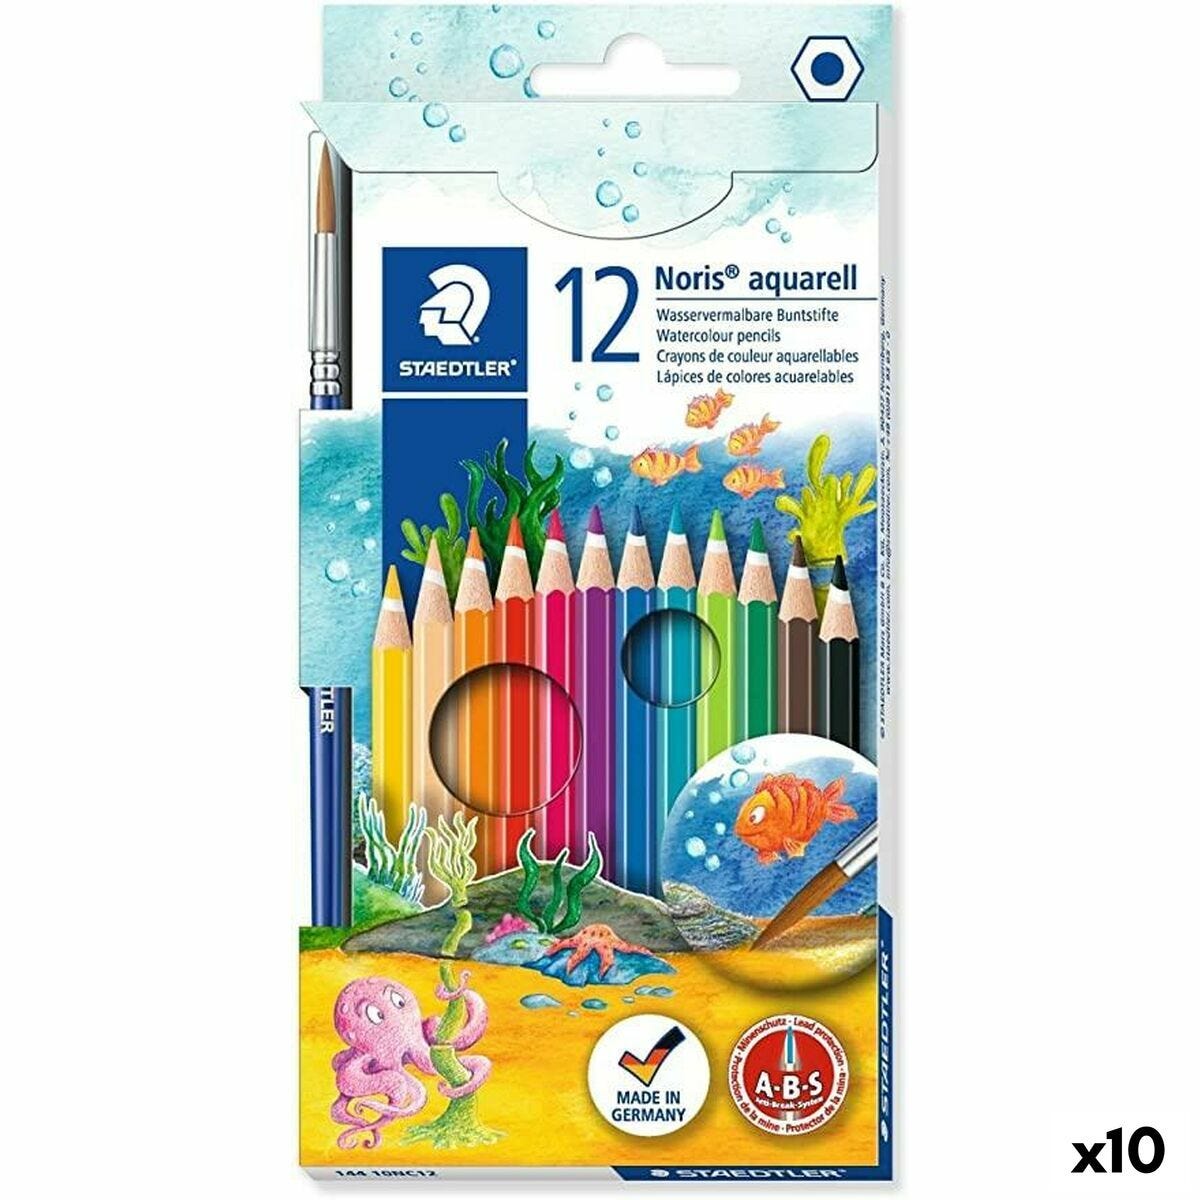 Mes Premiers Crayons - De 12 mois à 1 an - Crayons de couleur